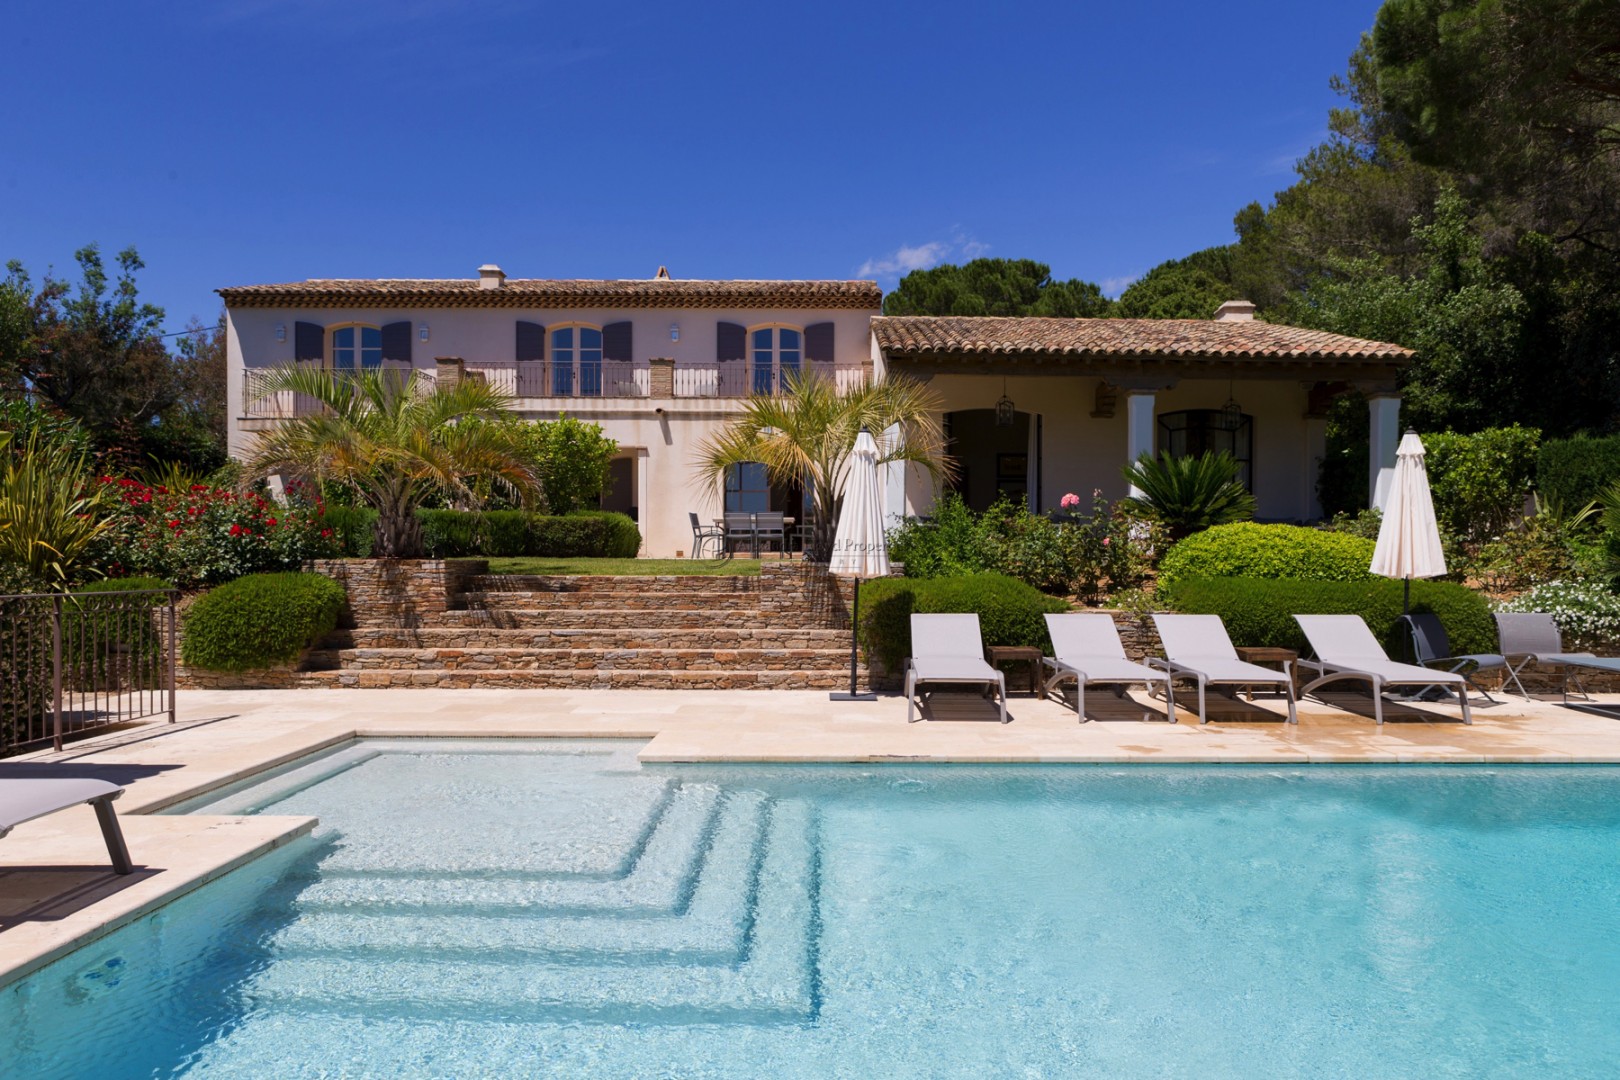 Luxury villas for rent located in the Domaine de la Capilla